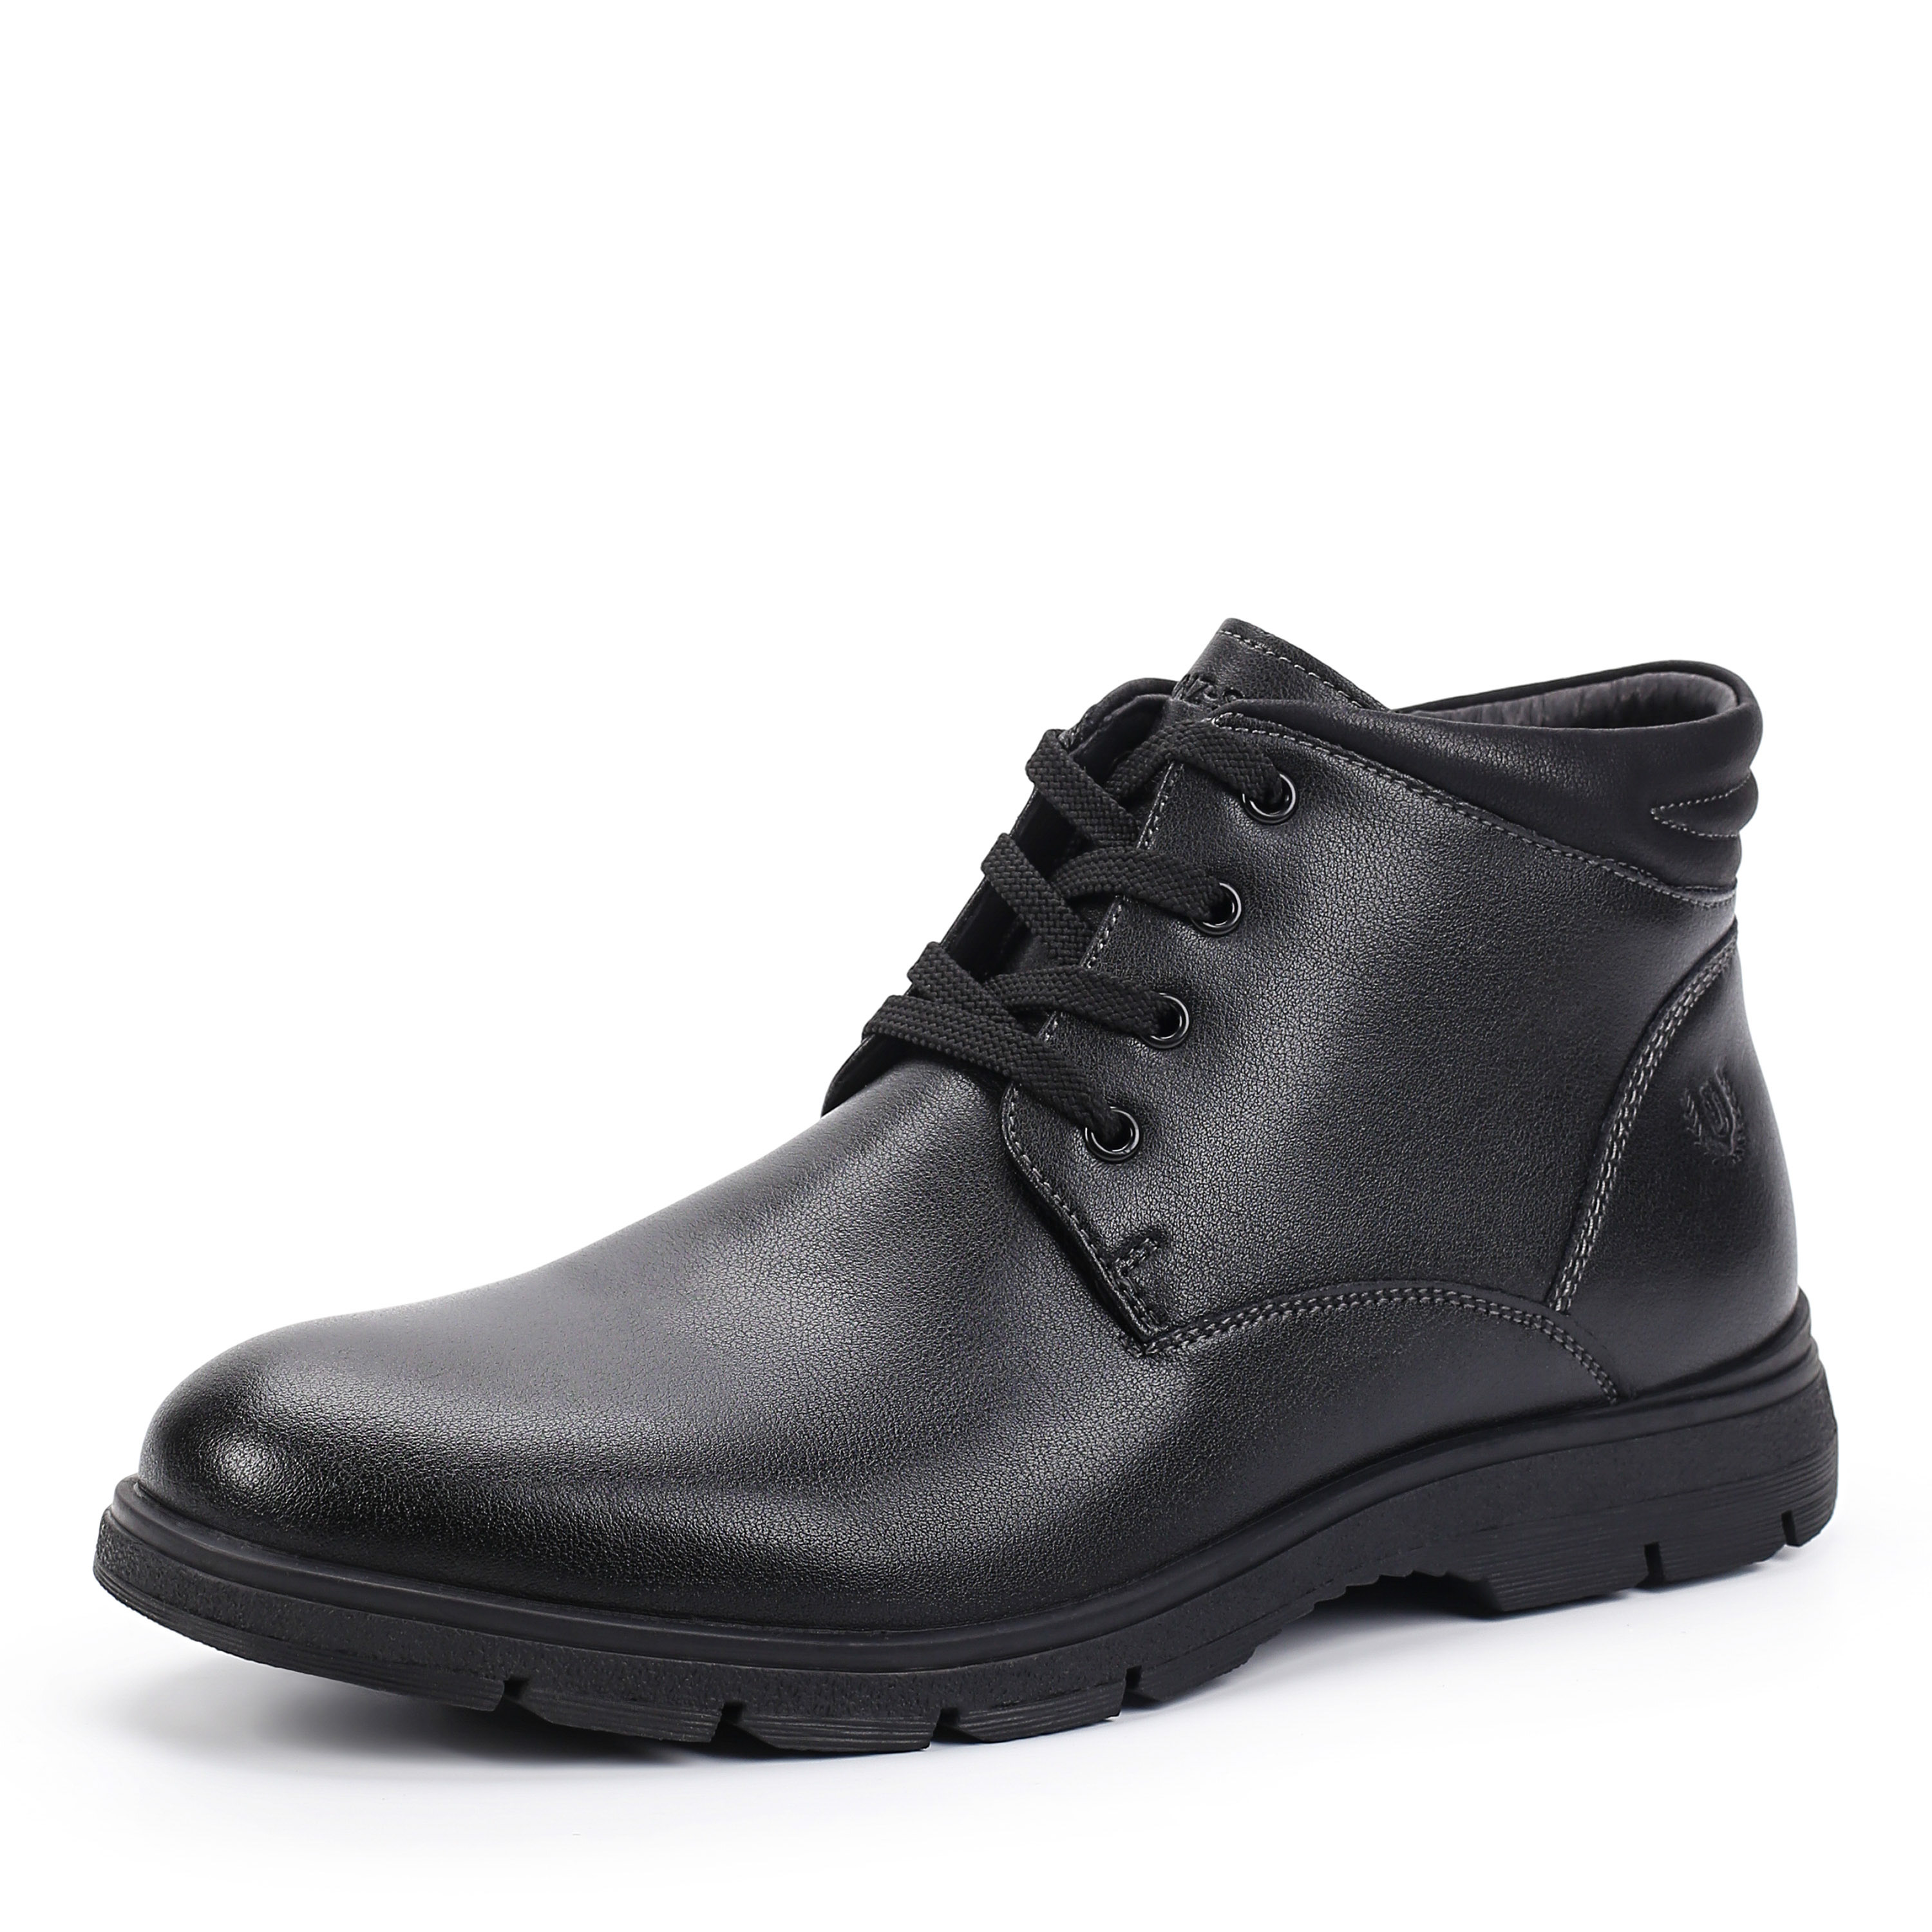 Ботинки MUNZ Shoes 098-126A-2602 098-126A-2602, цвет черный, размер 42 дерби - фото 2